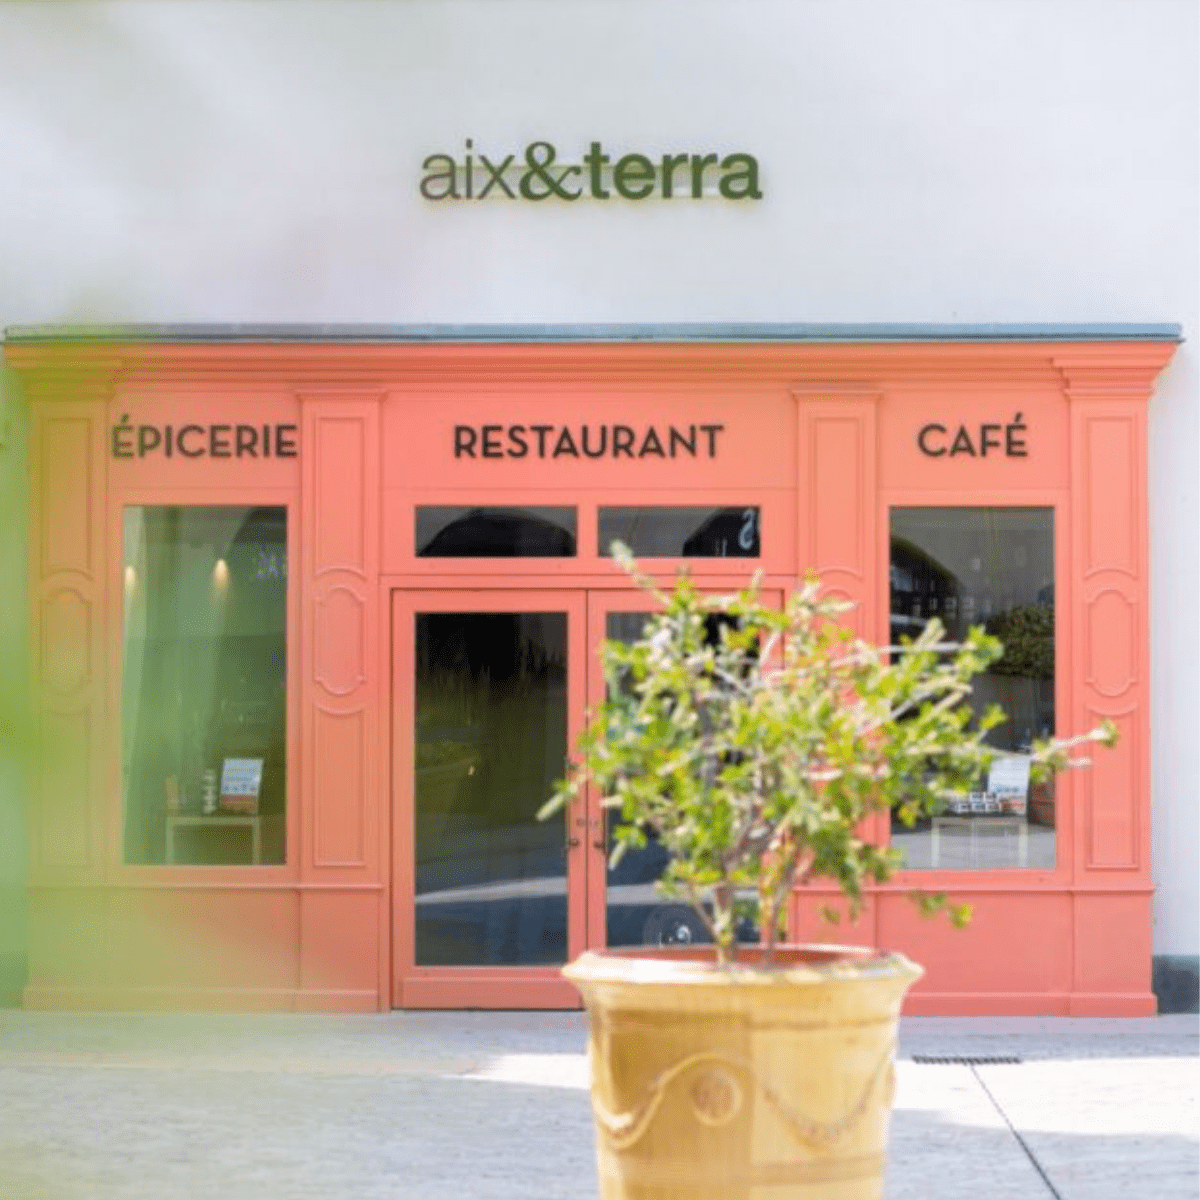 Les tables épiceries Aix&terra épicerie provençale